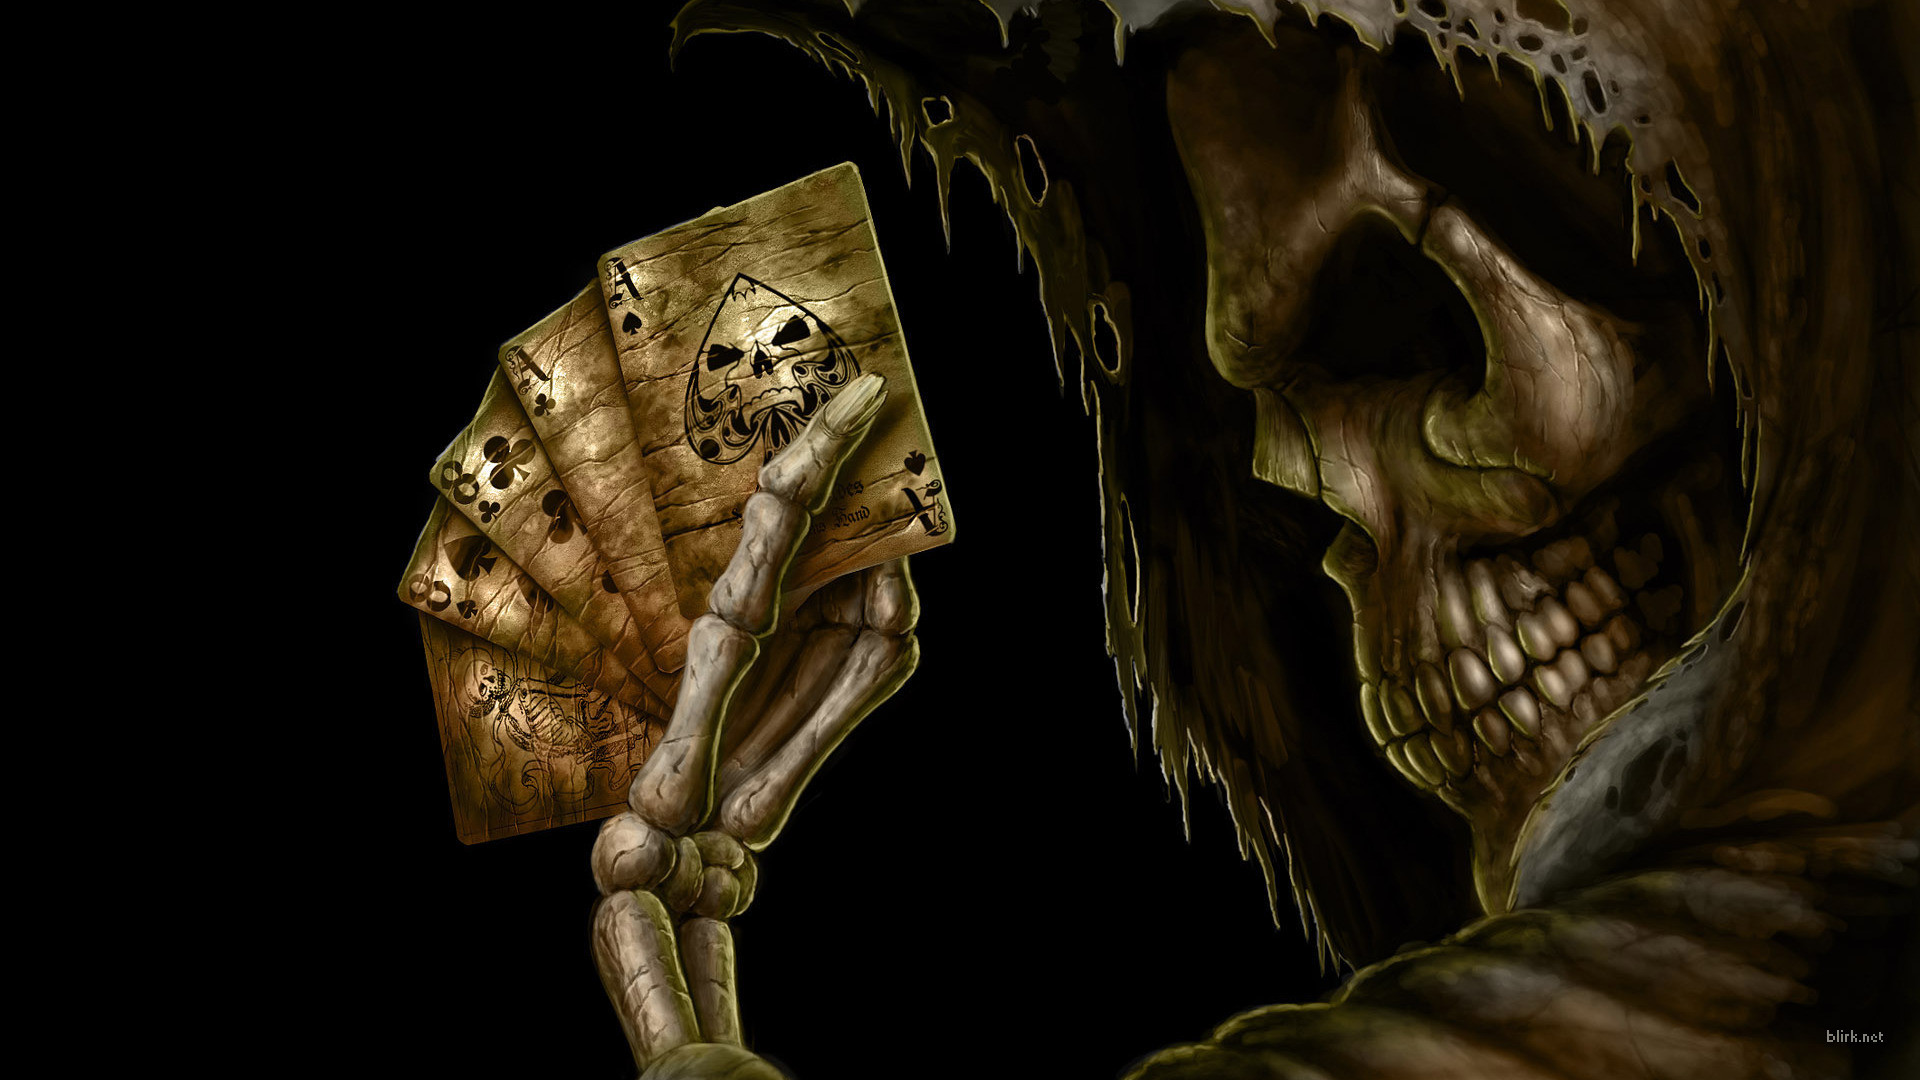 cards, skulls, death, skeletons - desktop wallpaper